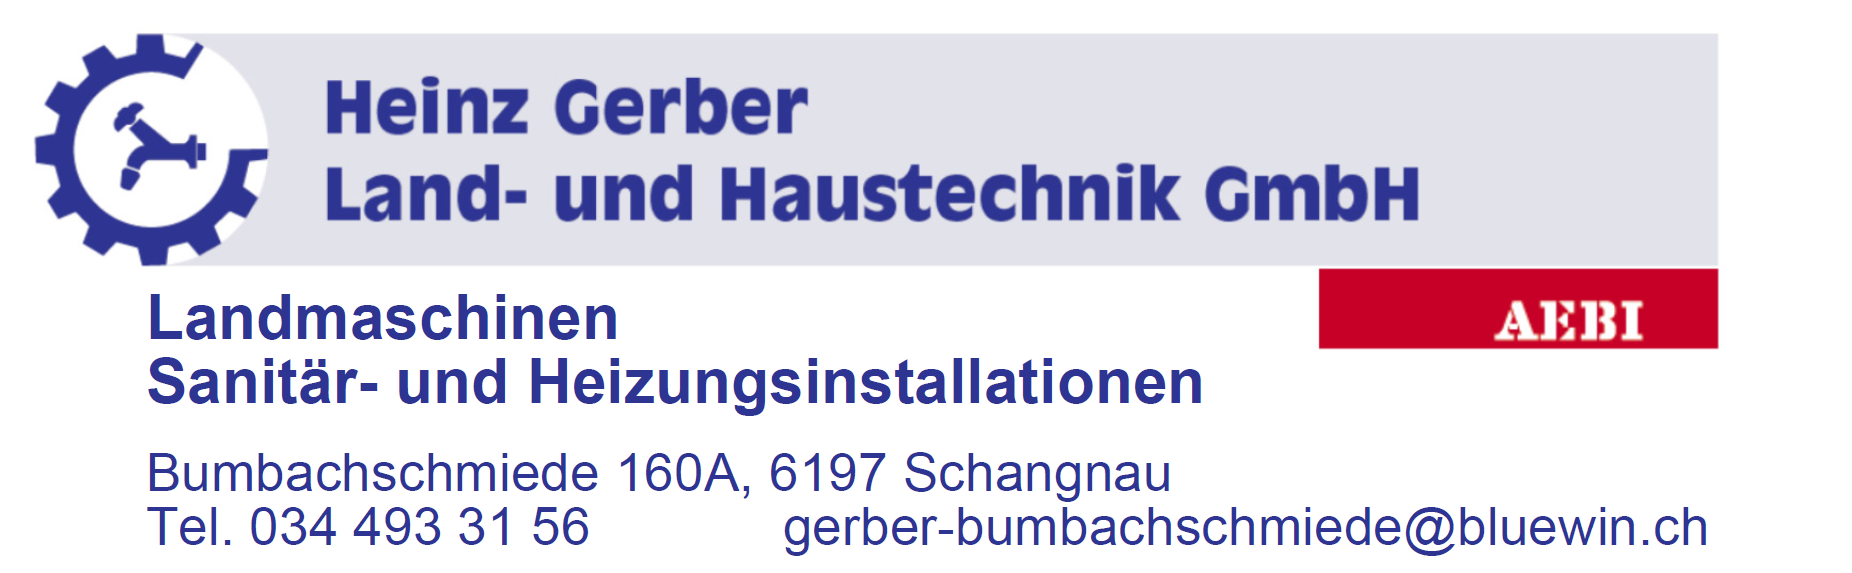 Heinz Gerber Land- und Haustechnik GmbH